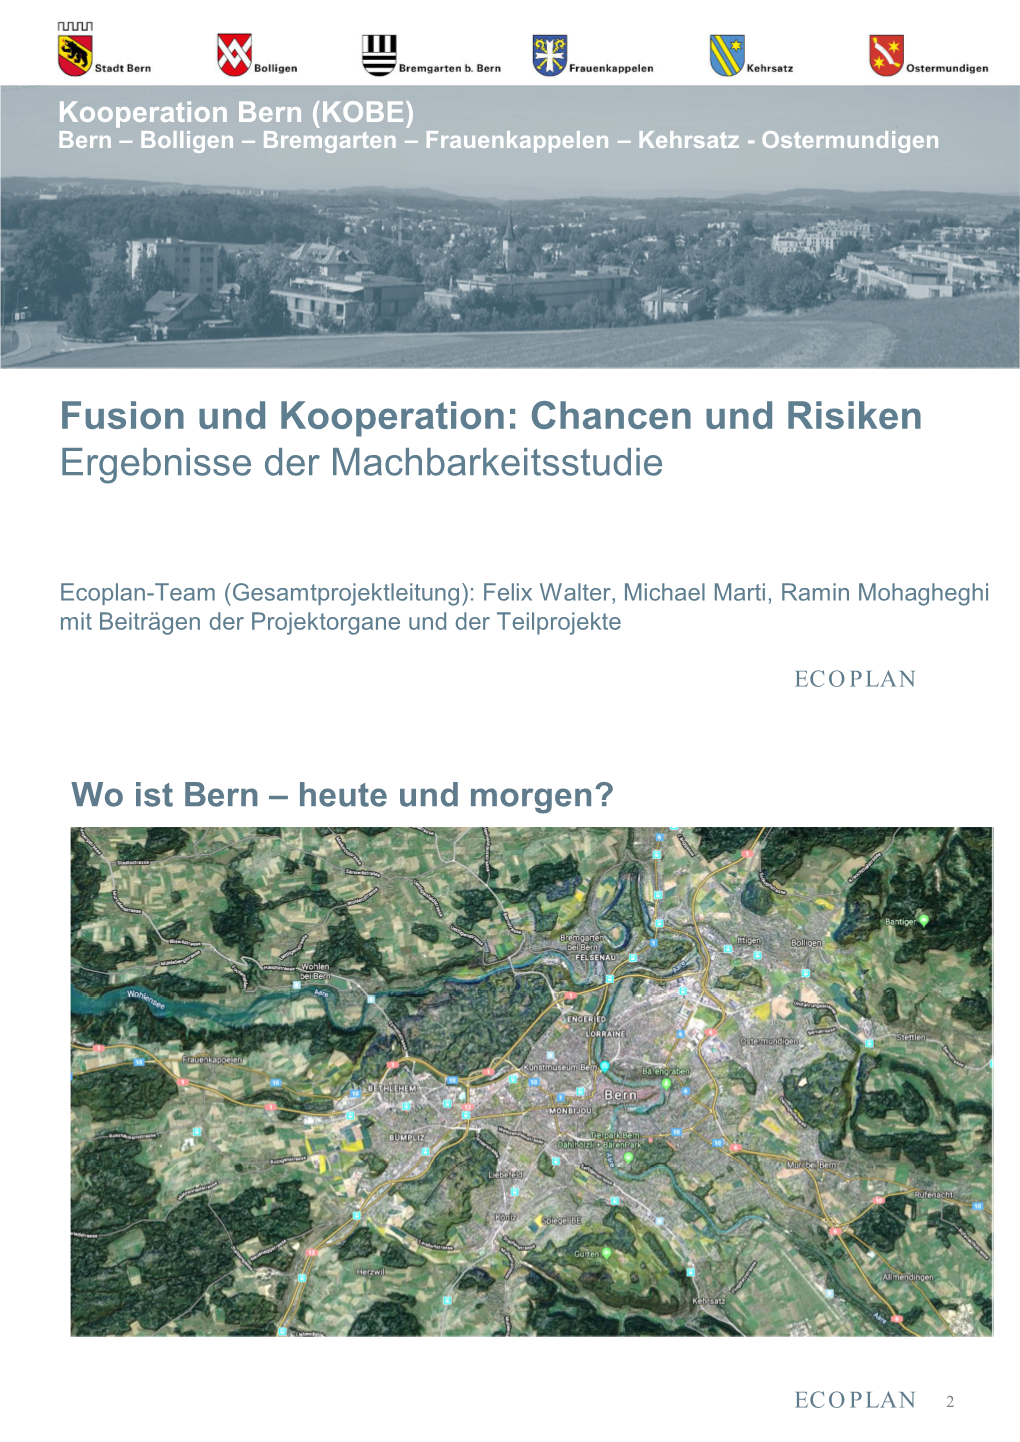 Fusion Und Kooperation: Chancen Und Risiken Ergebnisse Der Machbarkeitsstudie